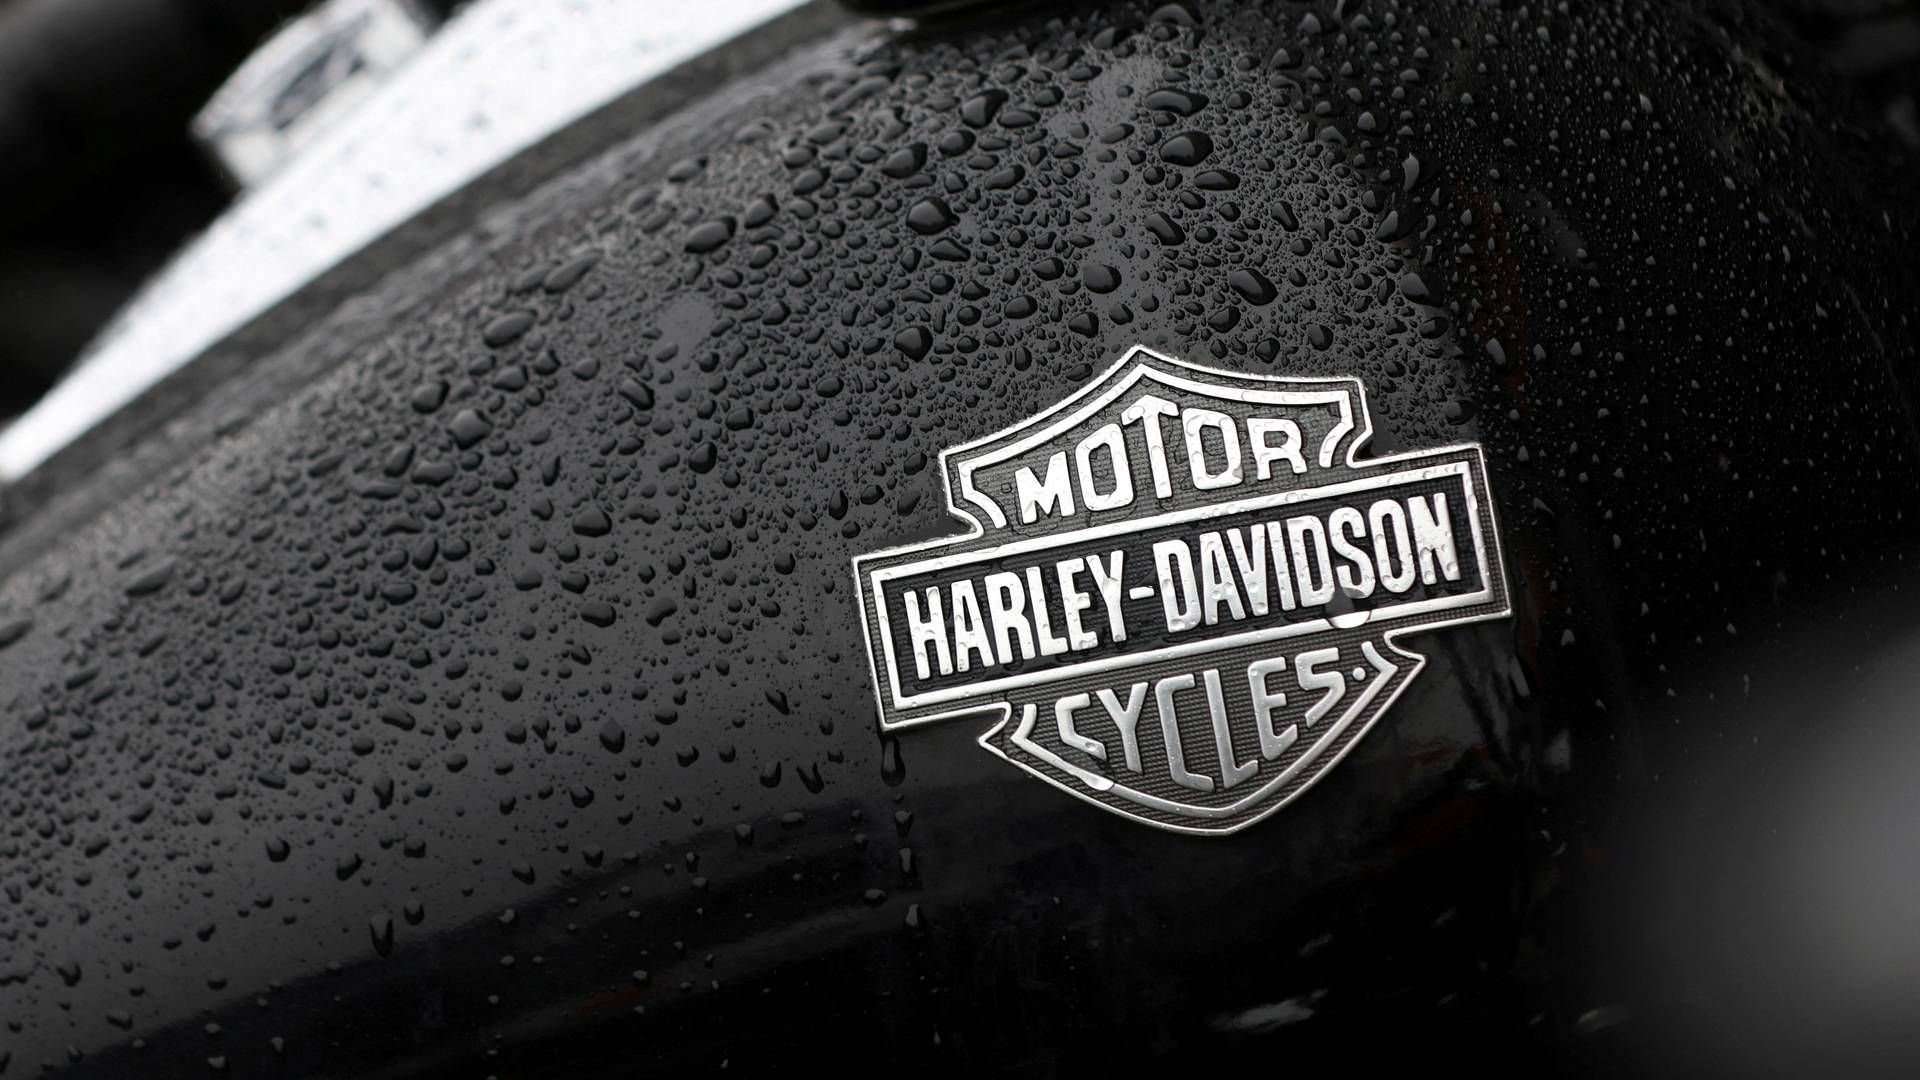 Global mangel på chips har ramt Harley-Davidson. | Foto: Andrew Kelly/REUTERS / X02844